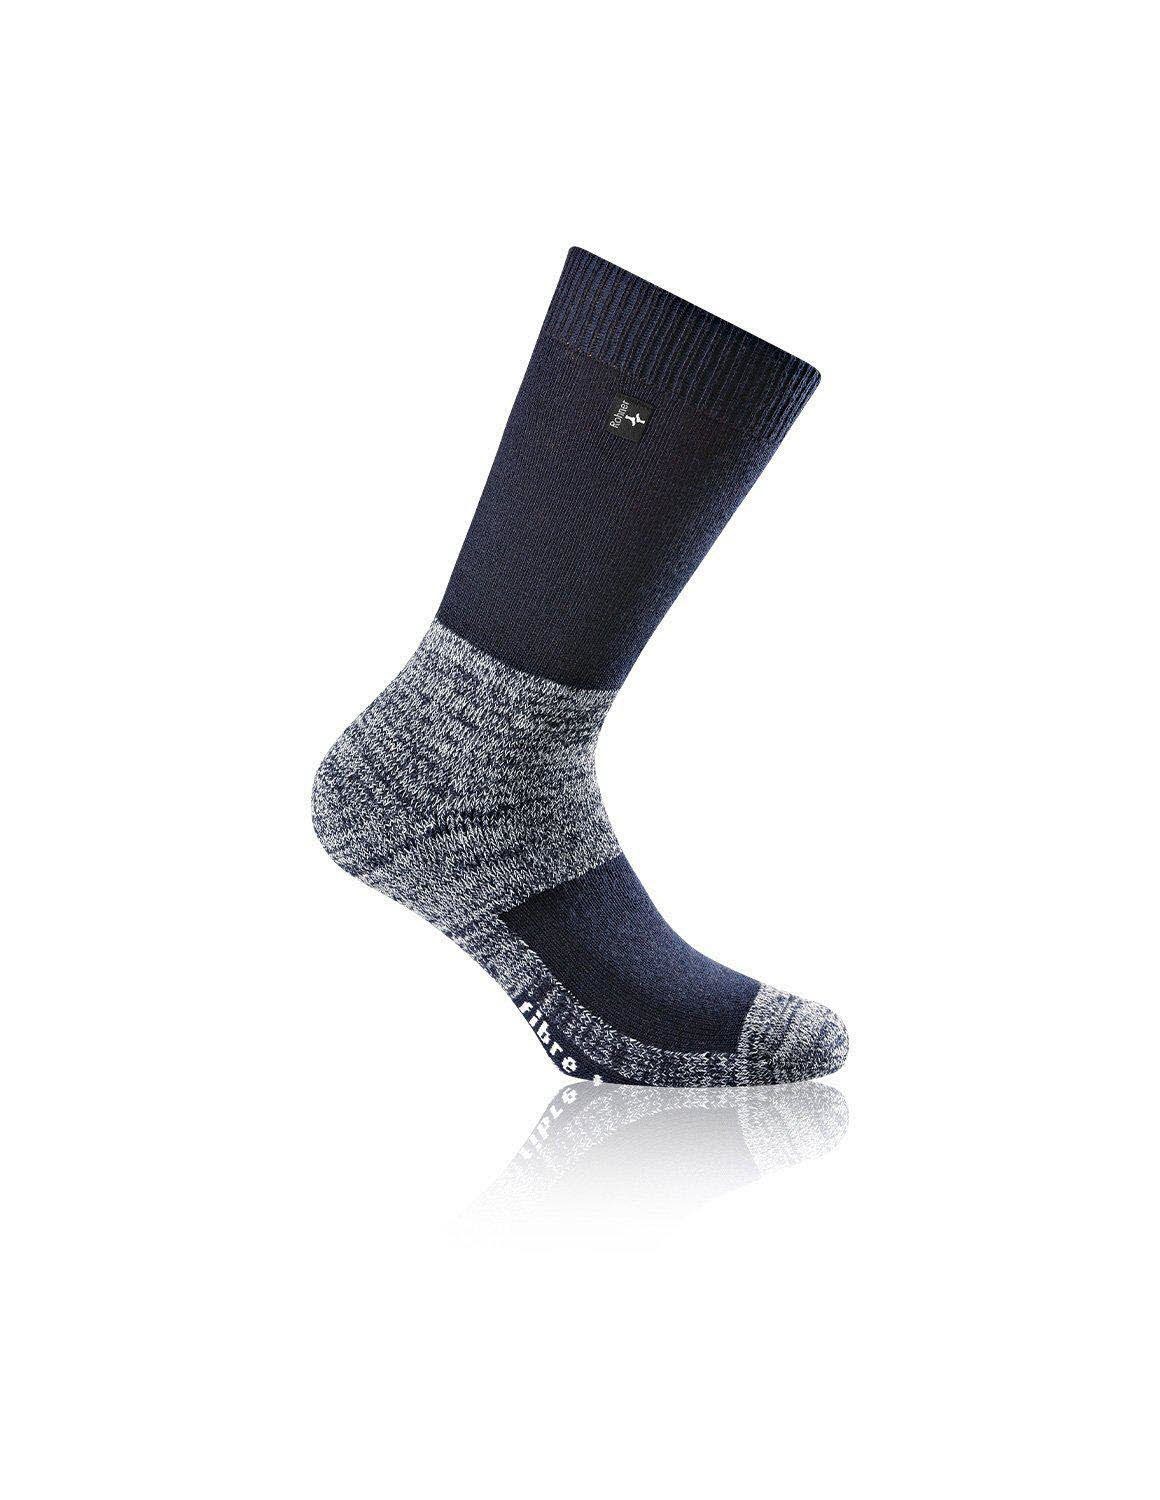 Rohner Socks Stulpensocken fibre tech marine | Socken